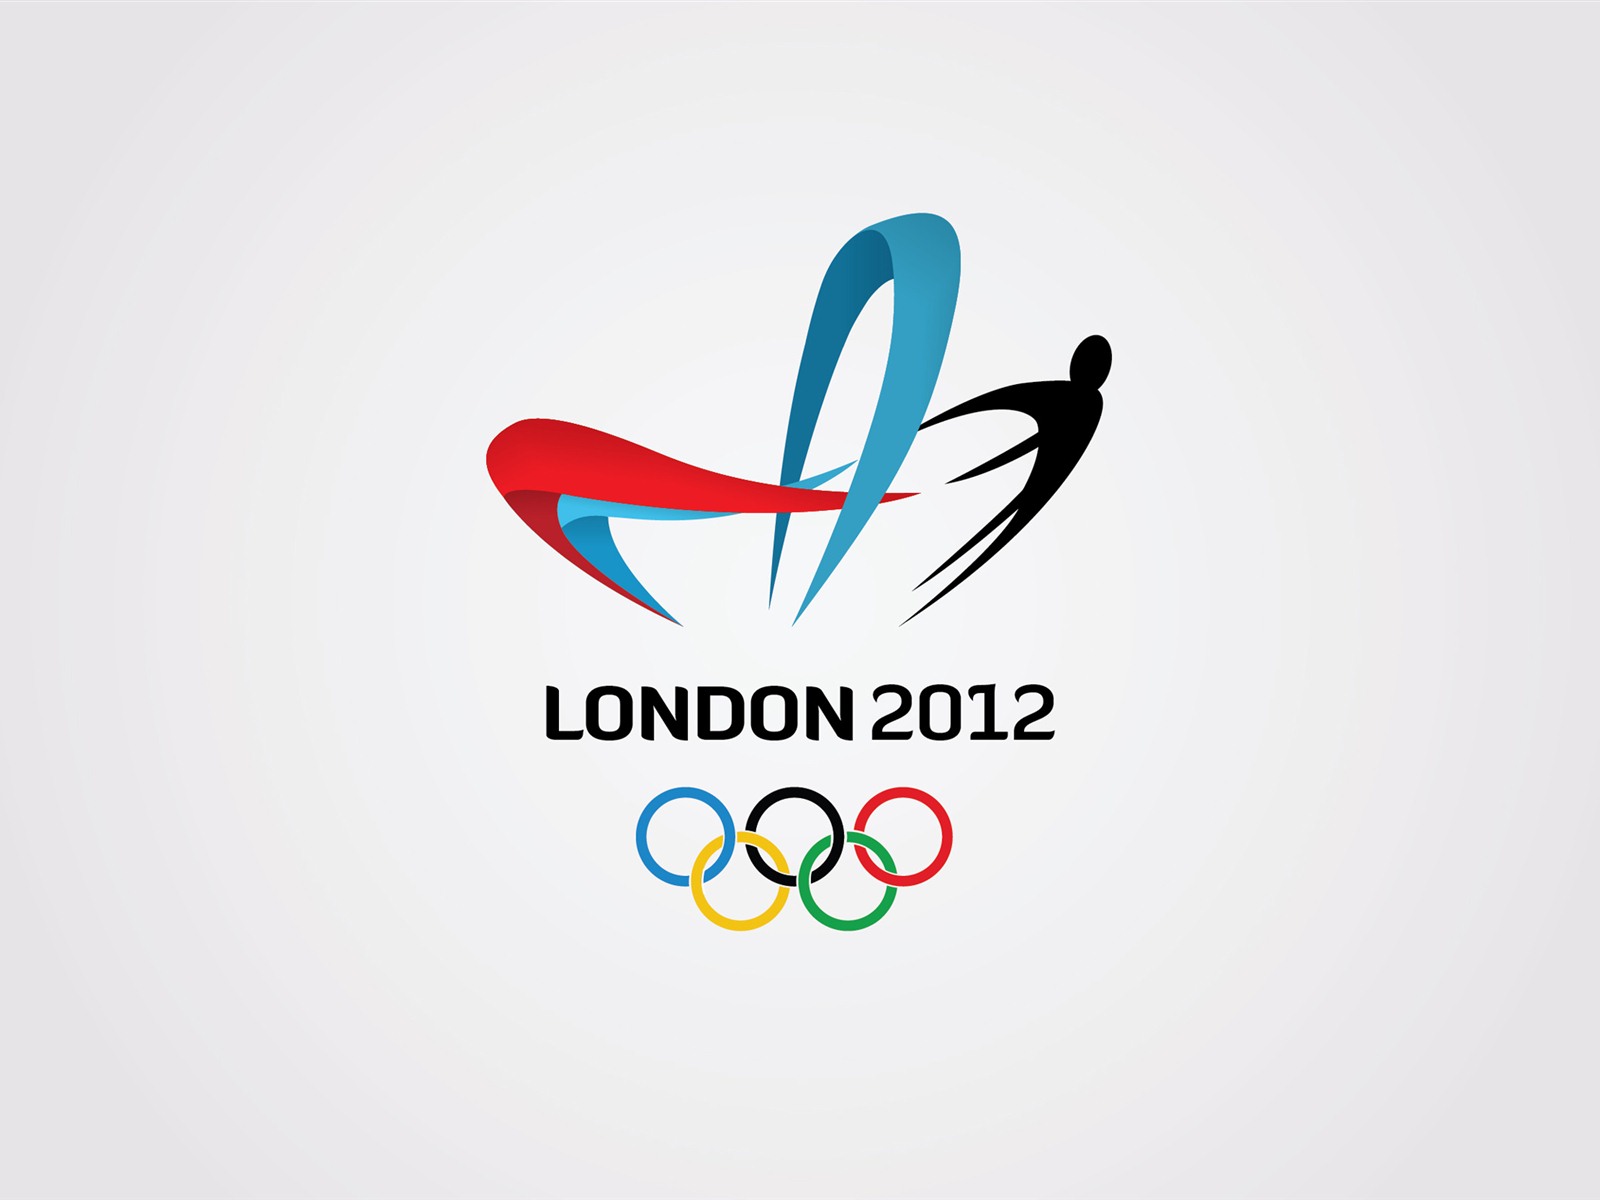 Londres 2012 Olimpiadas fondos temáticos (2) #25 - 1600x1200